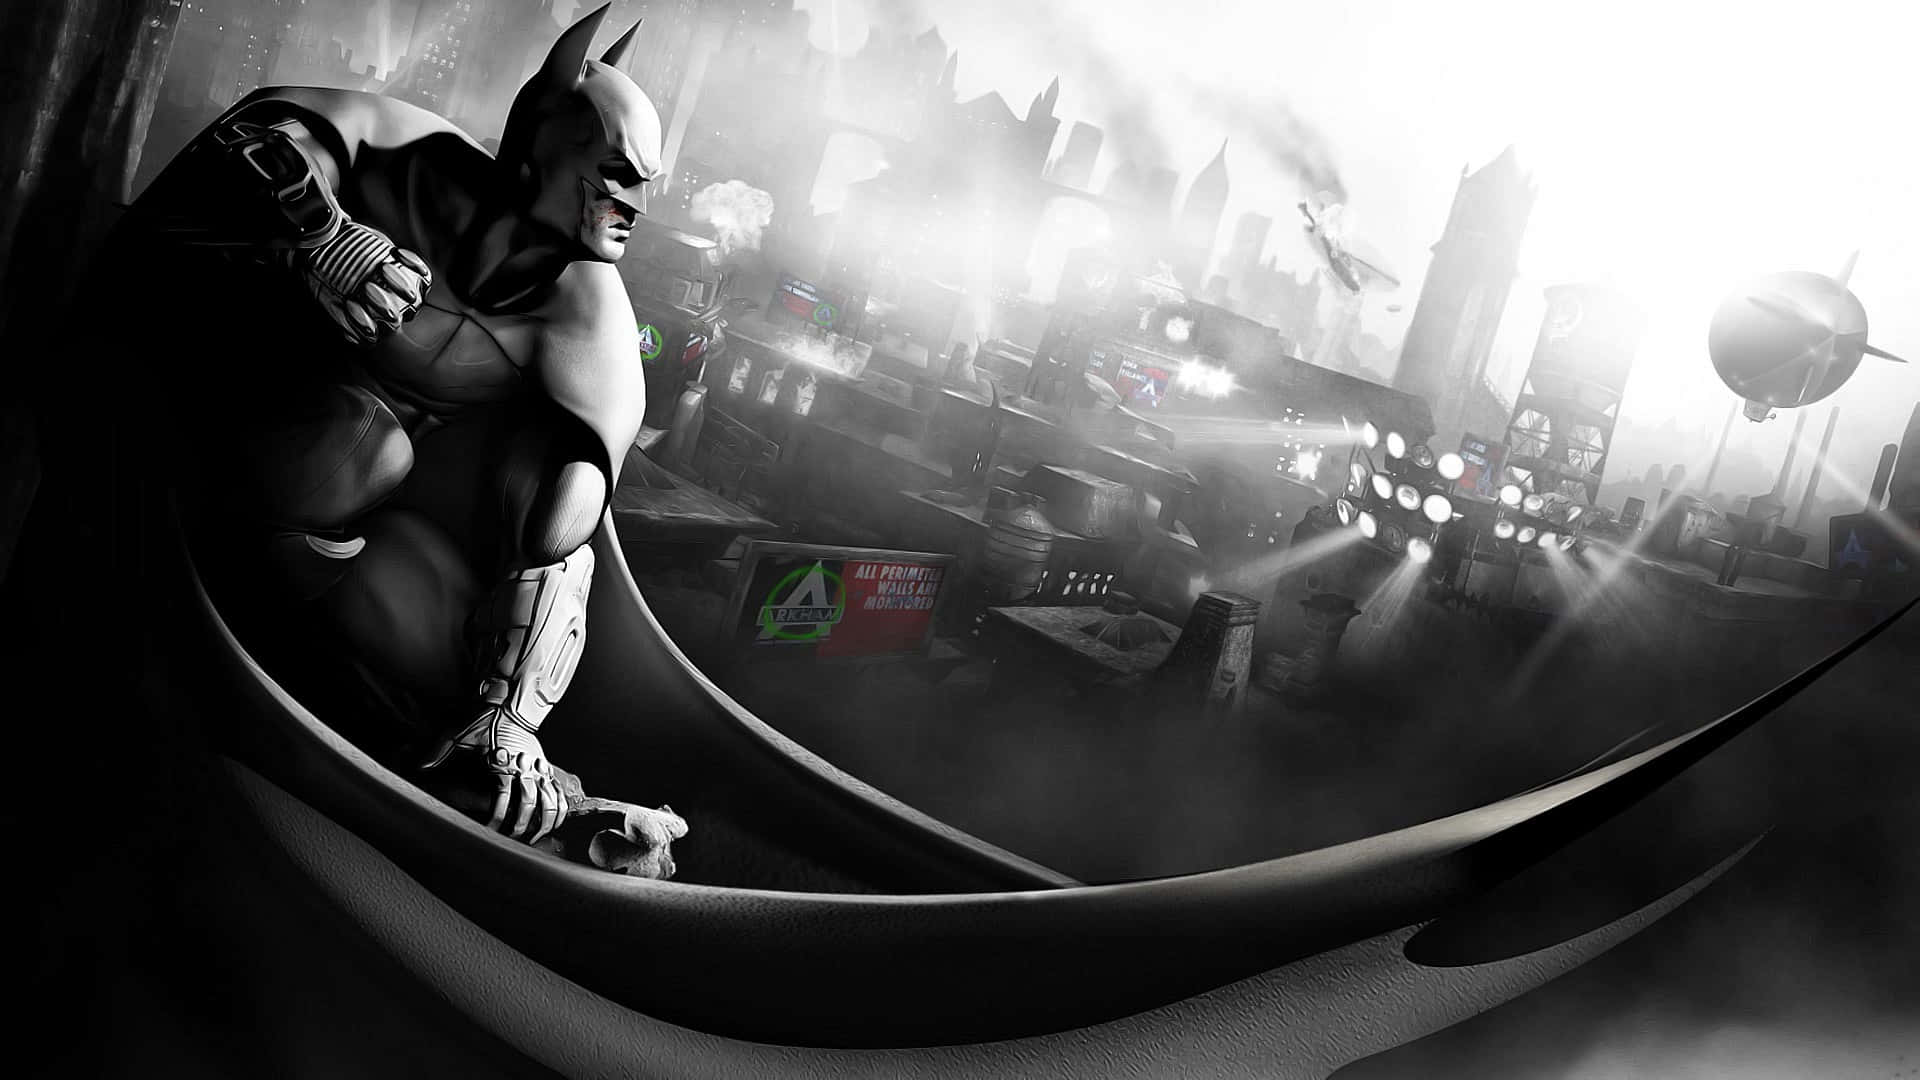 Gothamcity Väntar. Wallpaper